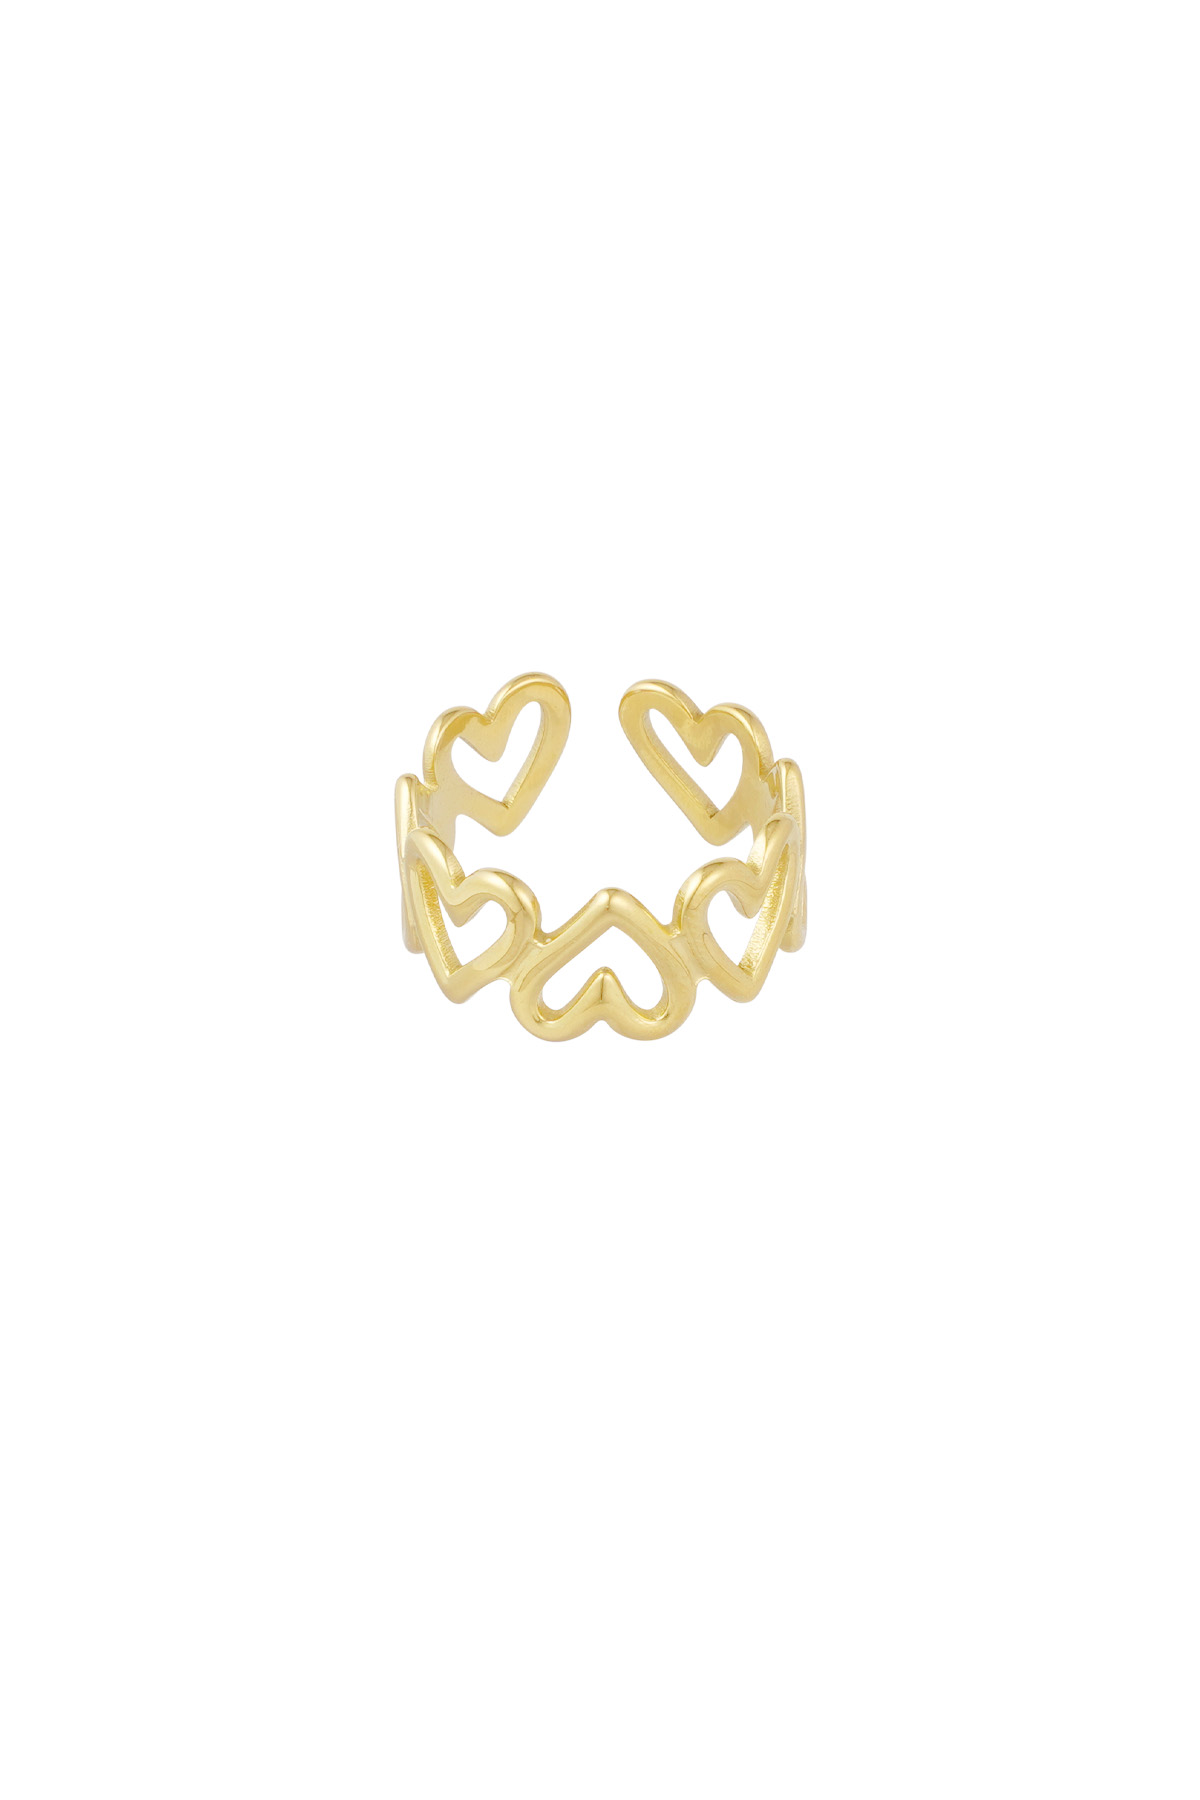 Bükülmüş aşk yüzüğü - altın Resim5